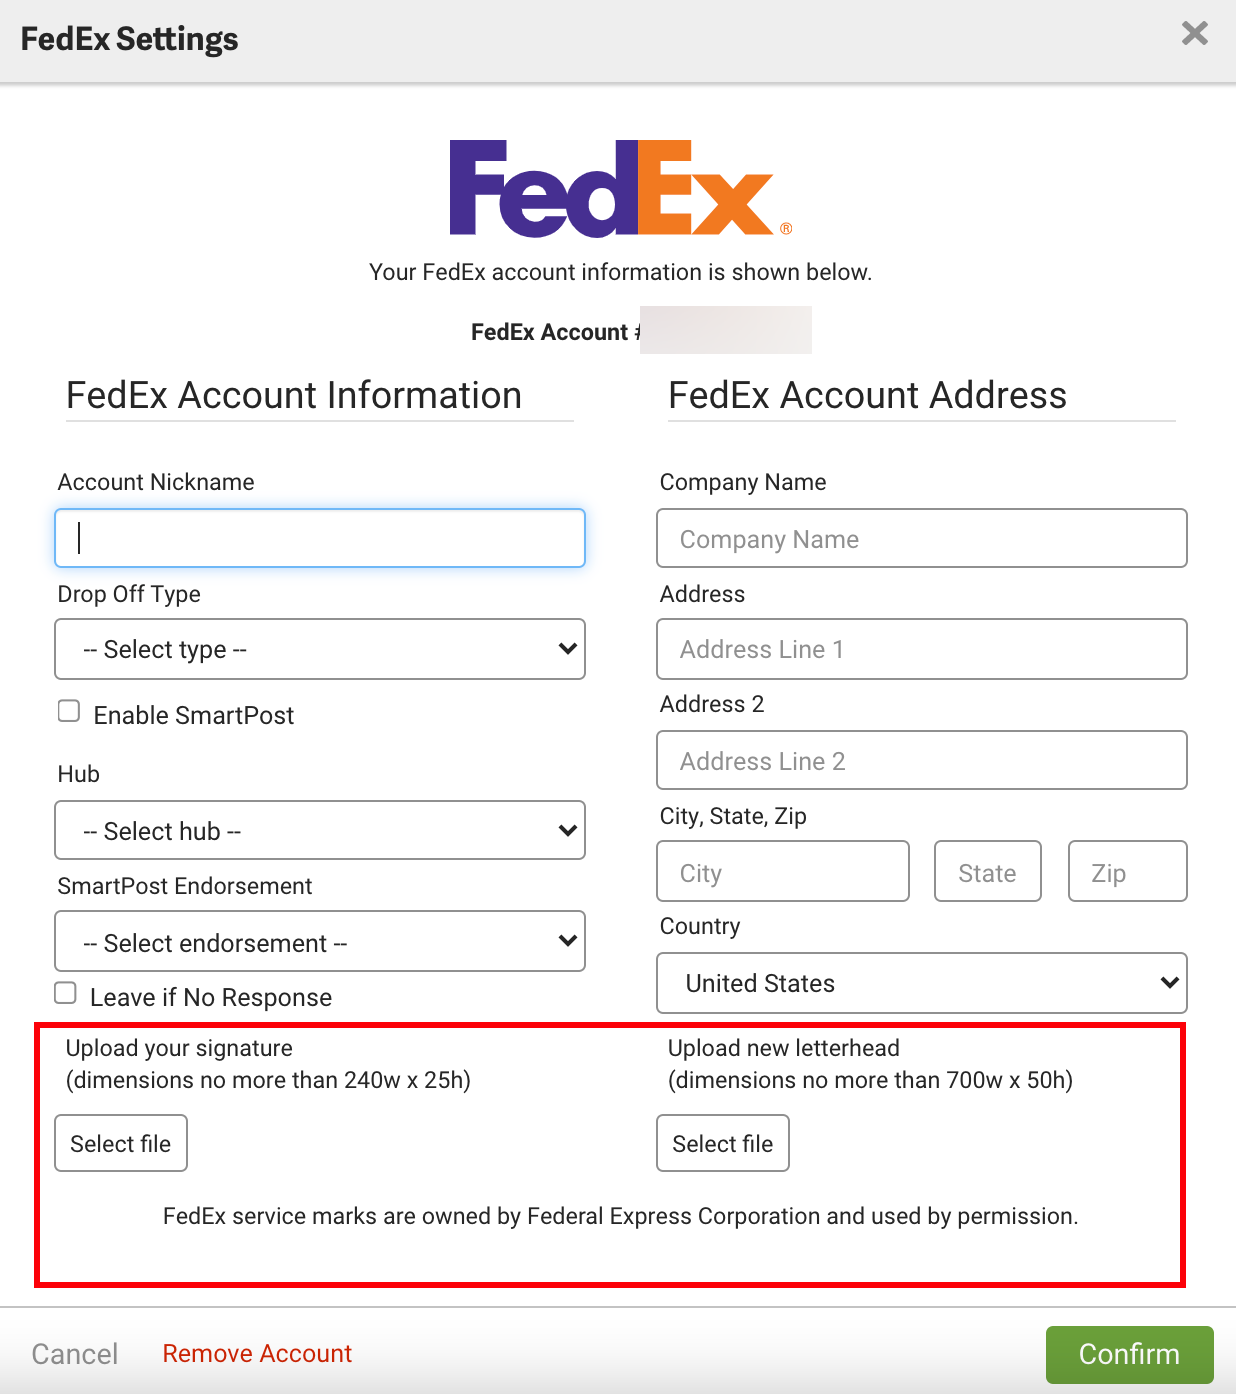 Ventana emergente de configuración de FedEx con la sección Cargar firma y Cargar membrete descrita